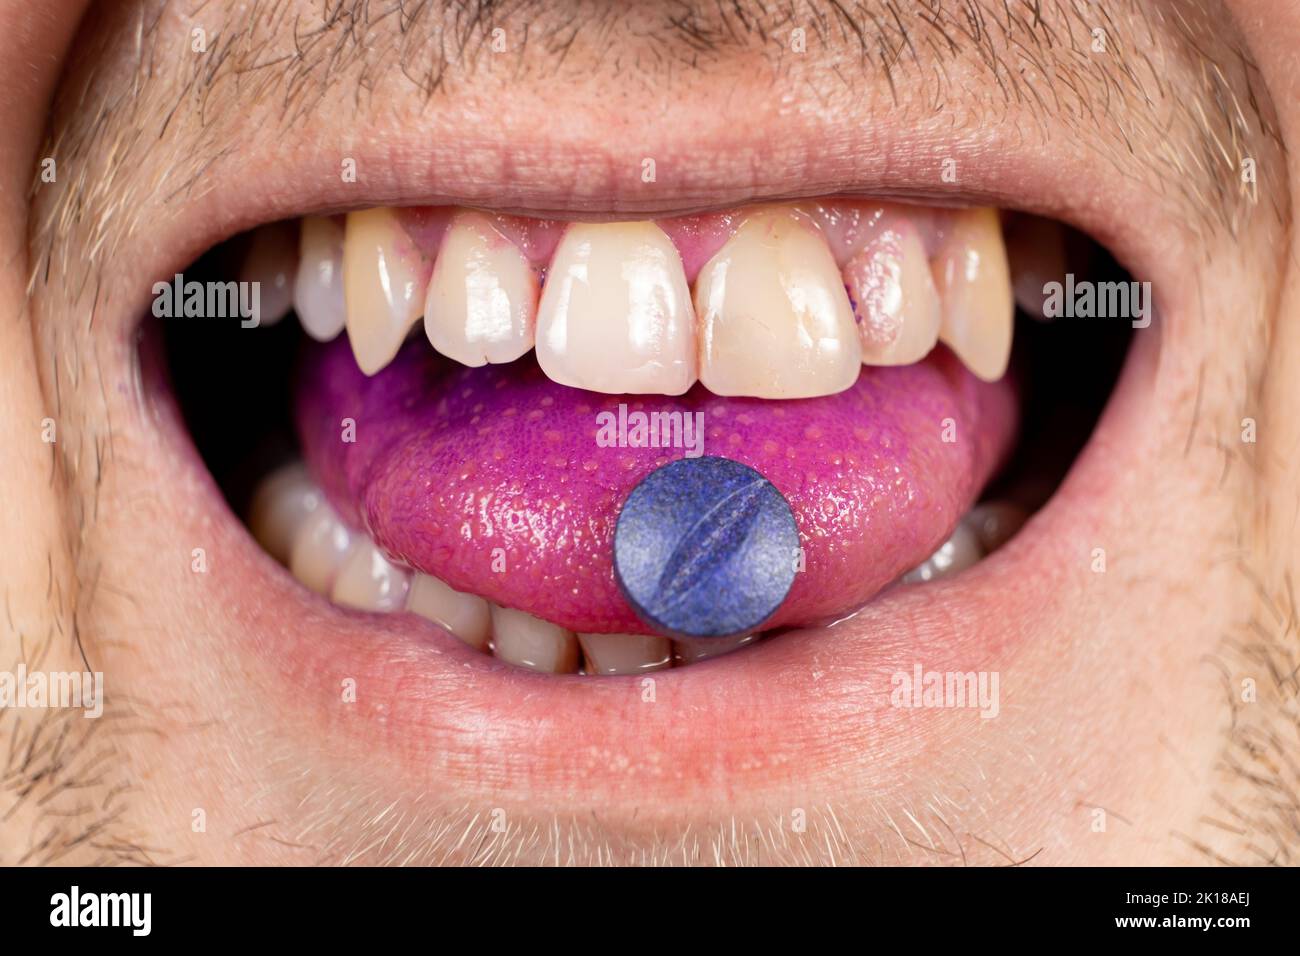 Eine Person zeigt eine Indikatorpille auf seiner Zunge, um Plaque zu bestimmen. Stockfoto